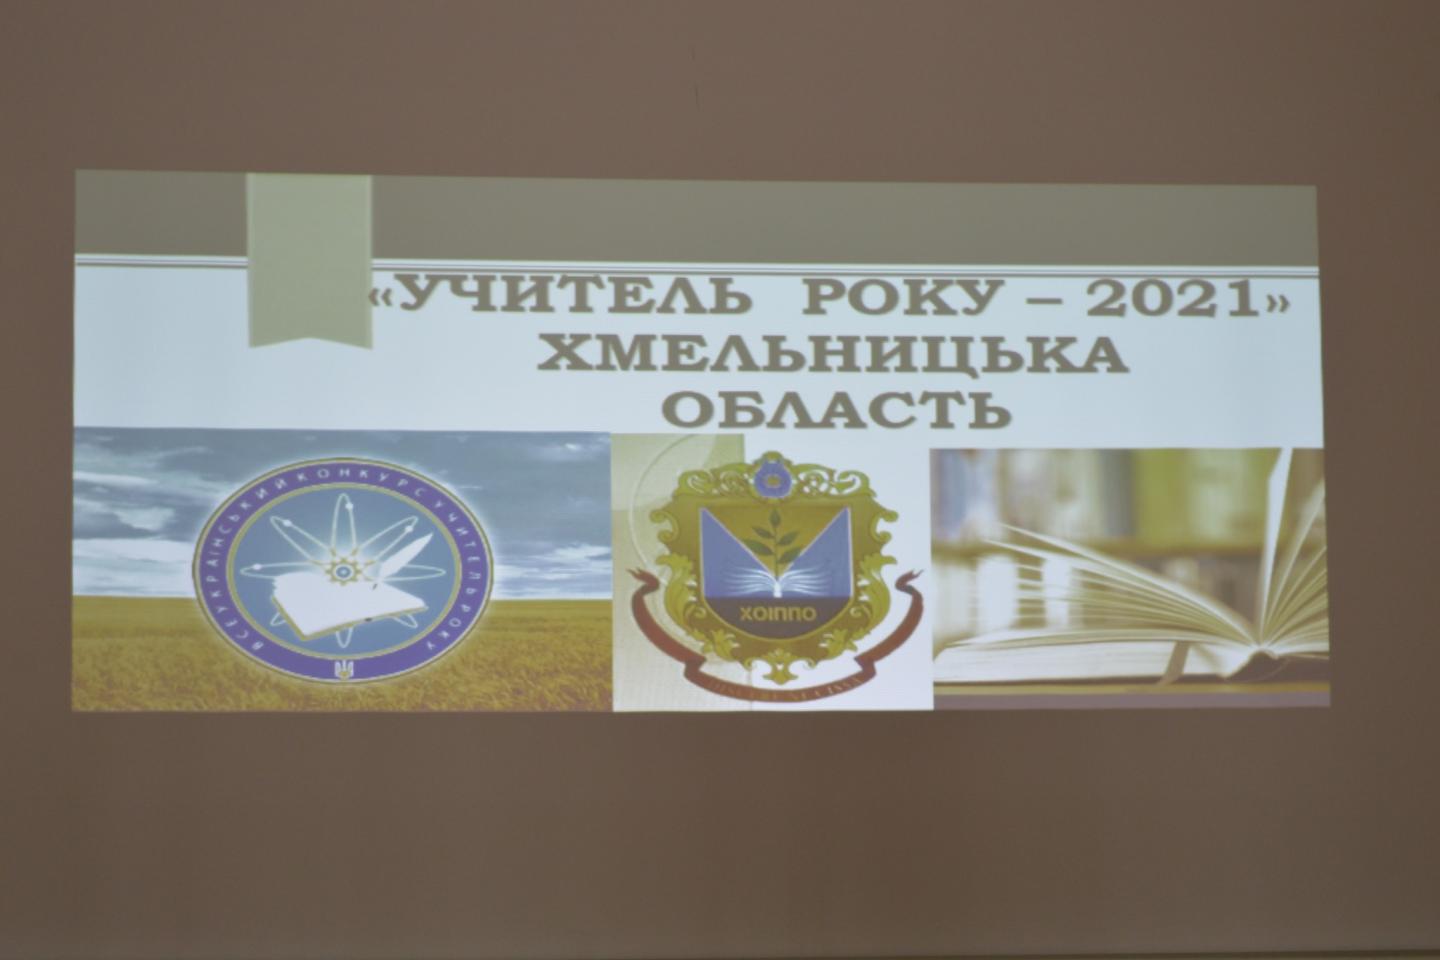 http://dunrada.gov.ua/uploadfile/archive_news/2021/03/03/2021-03-03_4578/images/images-88710.jpg